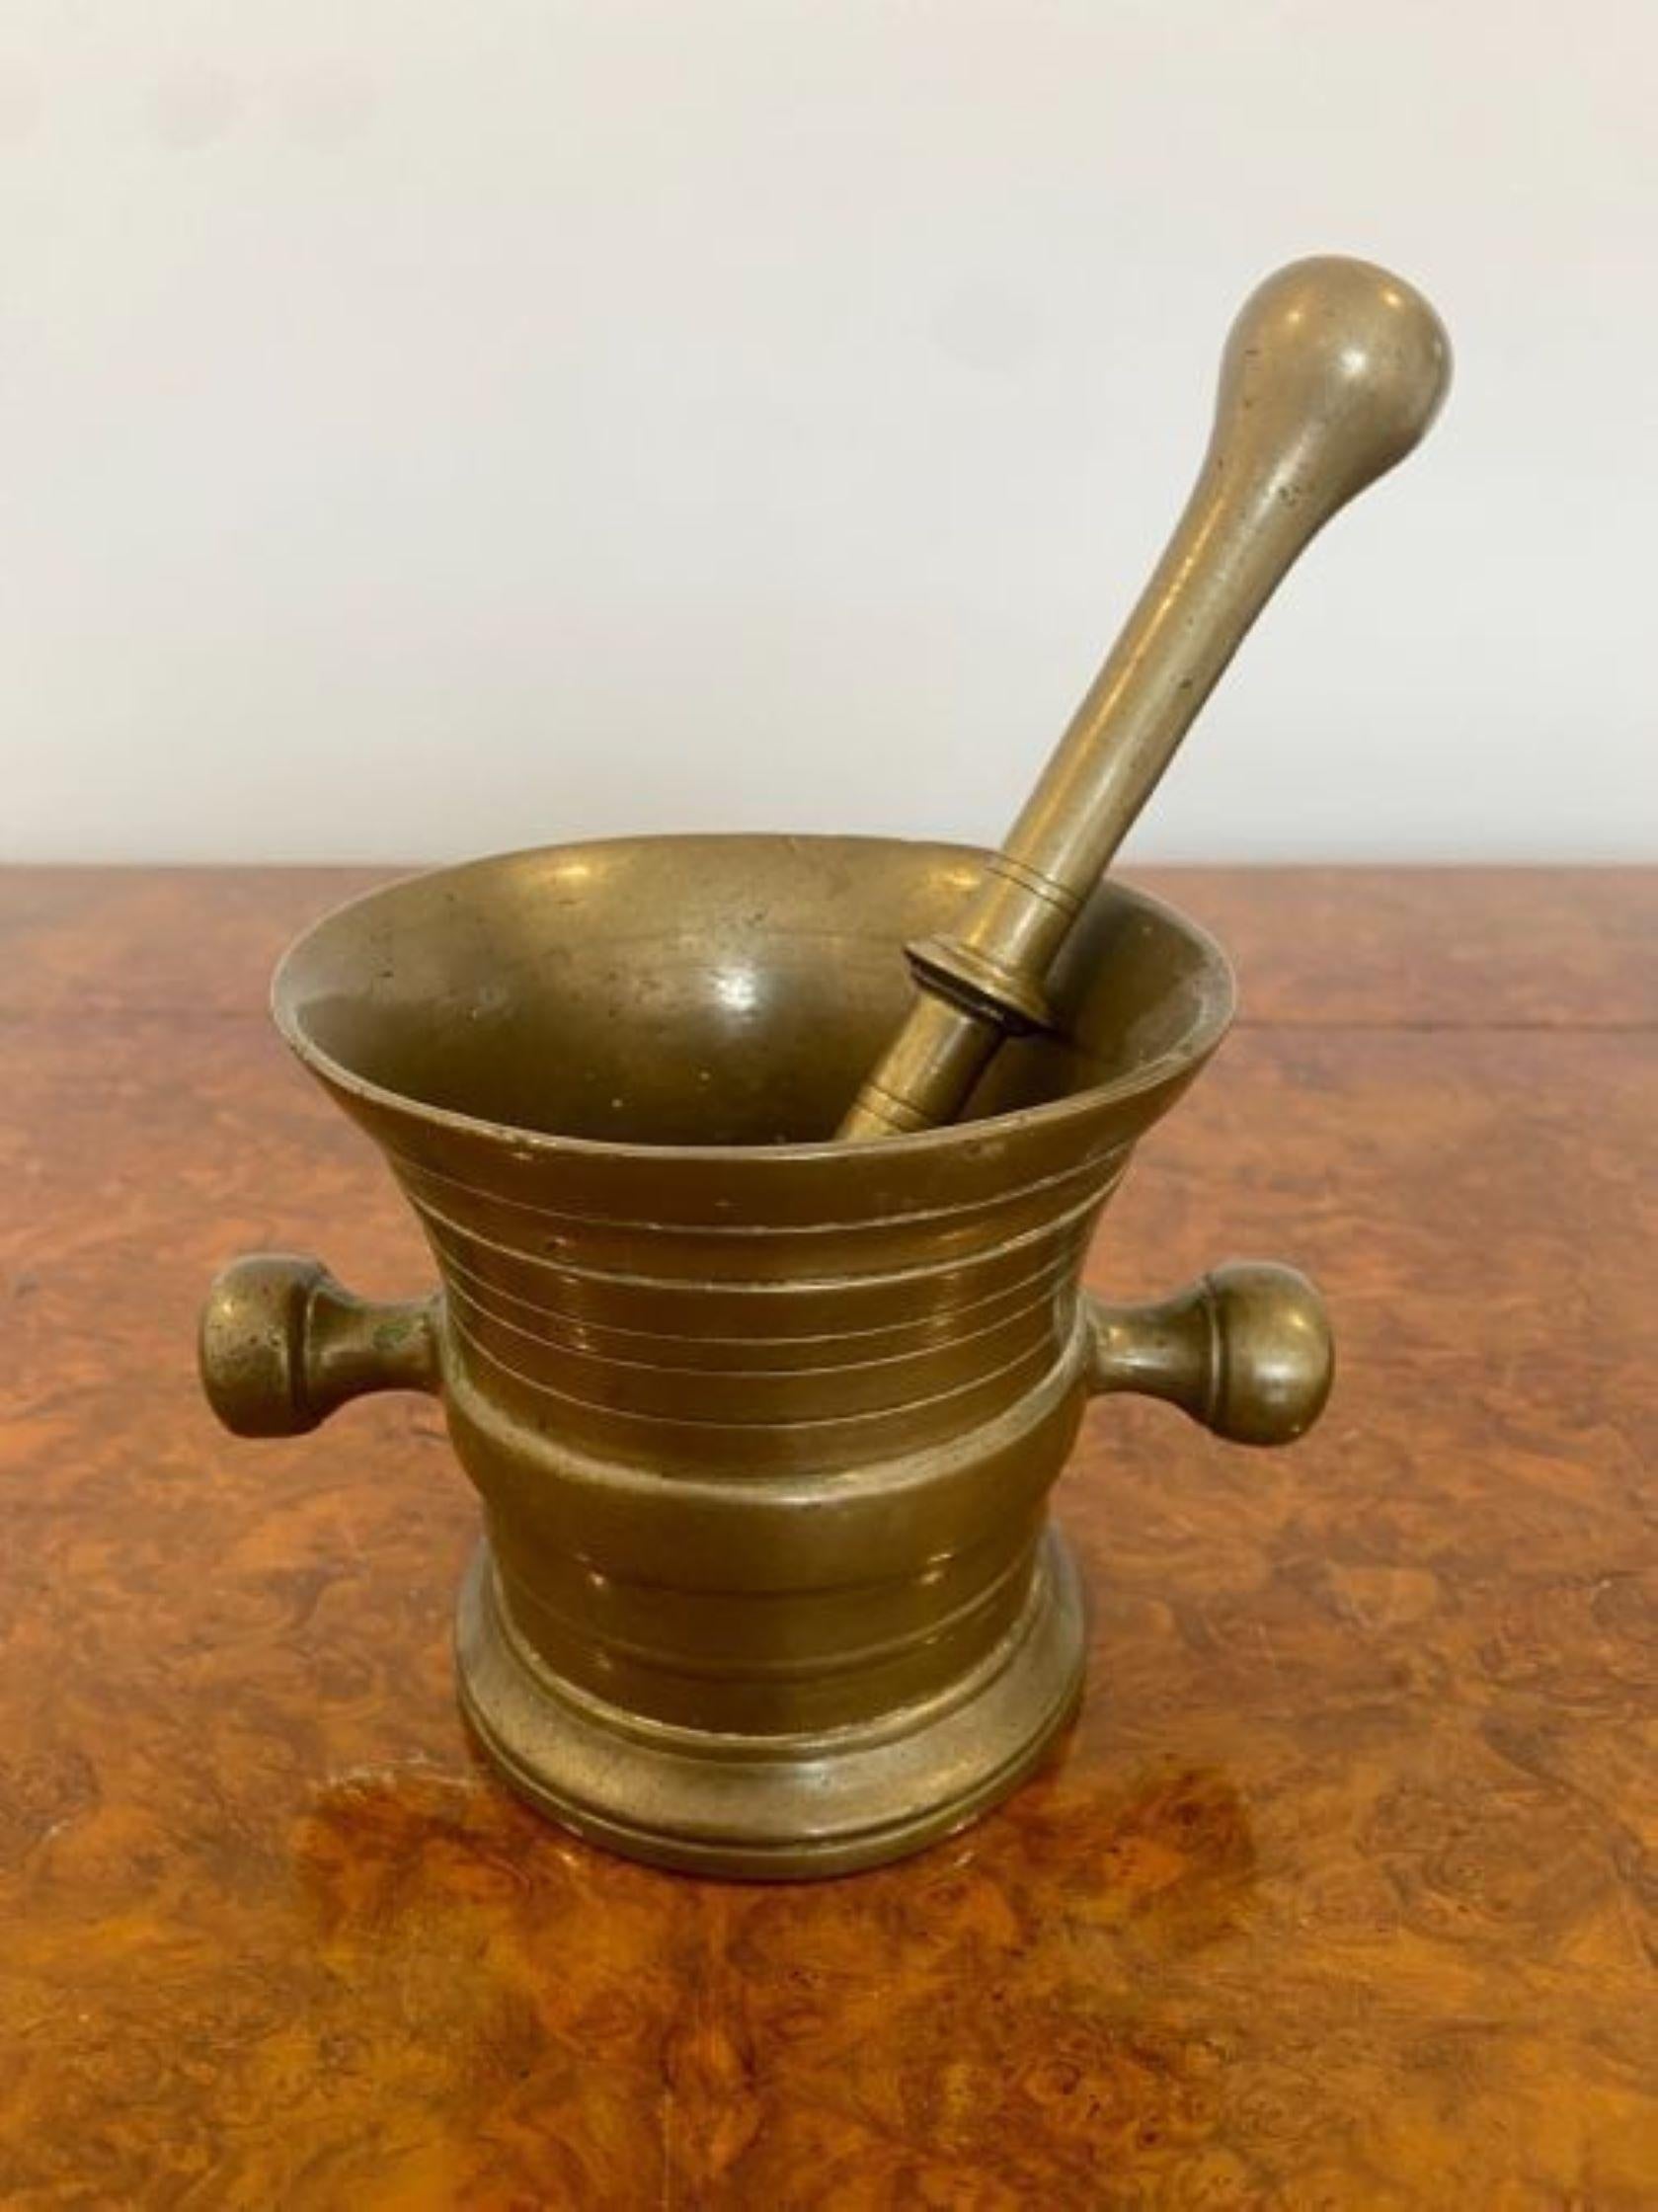 Antique bronze pestle and mortar.
Antique bronze mortar bowl with the original bronze pestle.